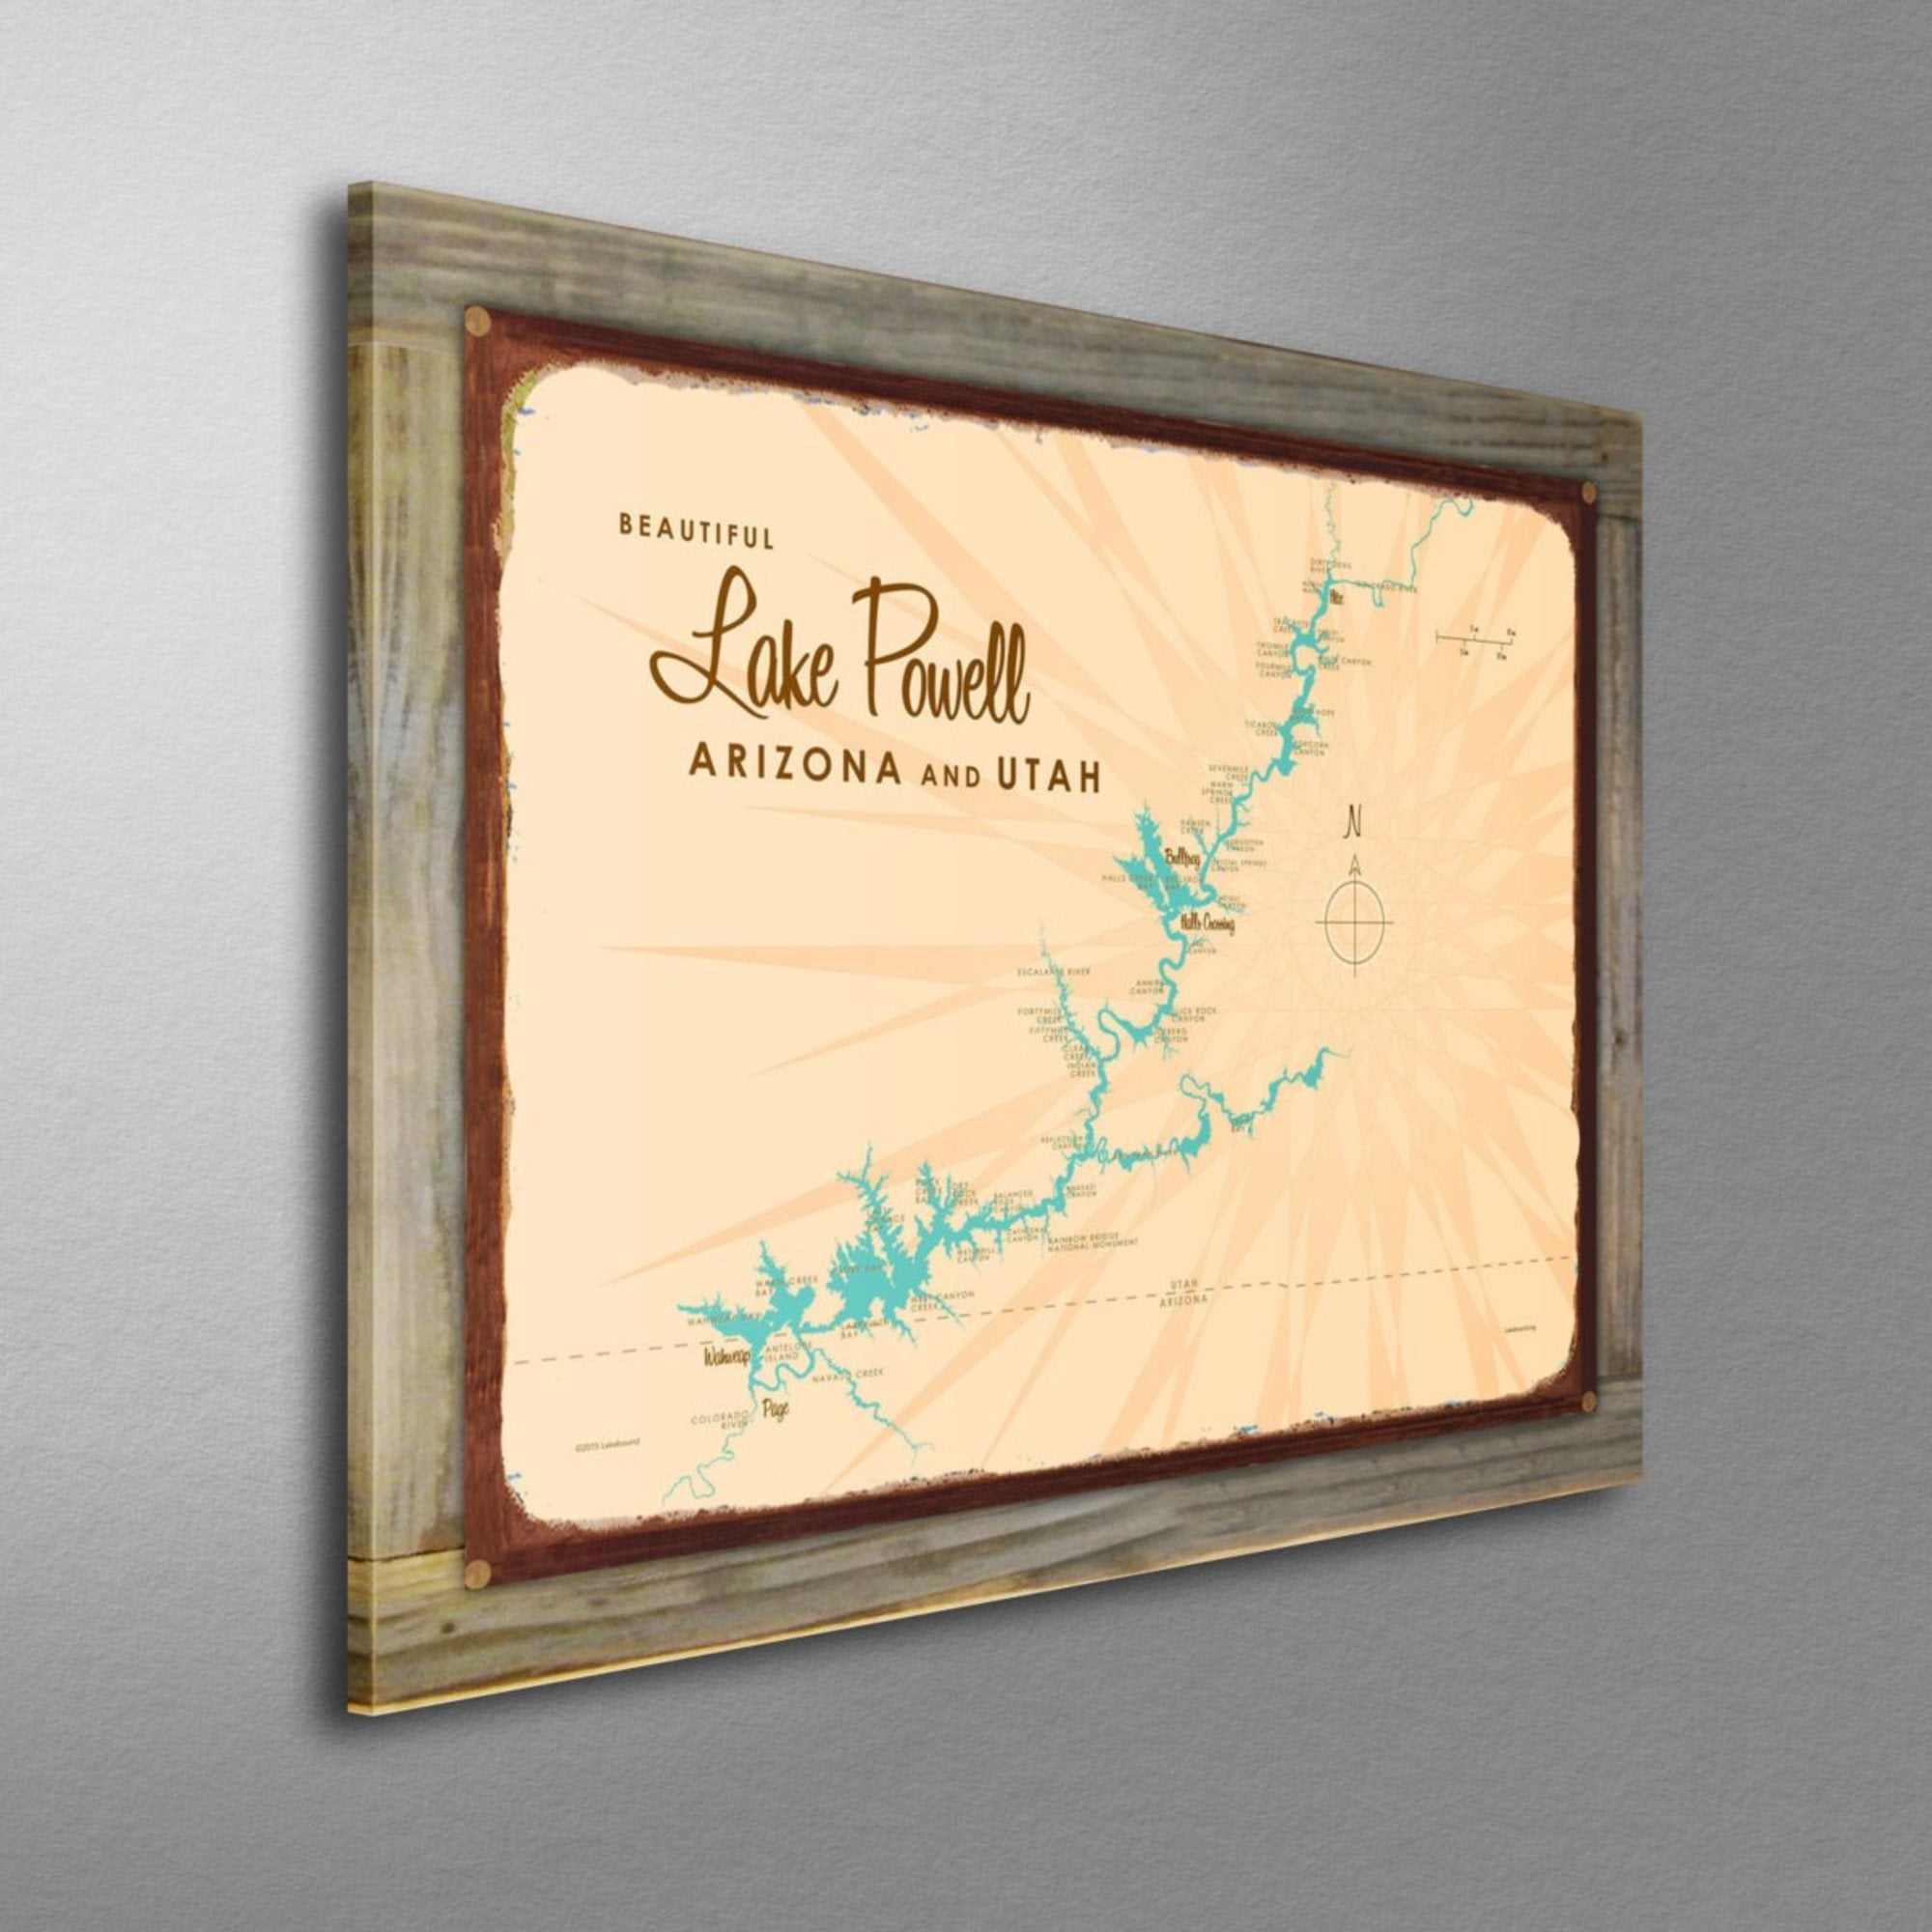 Lake Powell Utah Arizona, Wood-Mounted Rustic Metal Sign Map Art